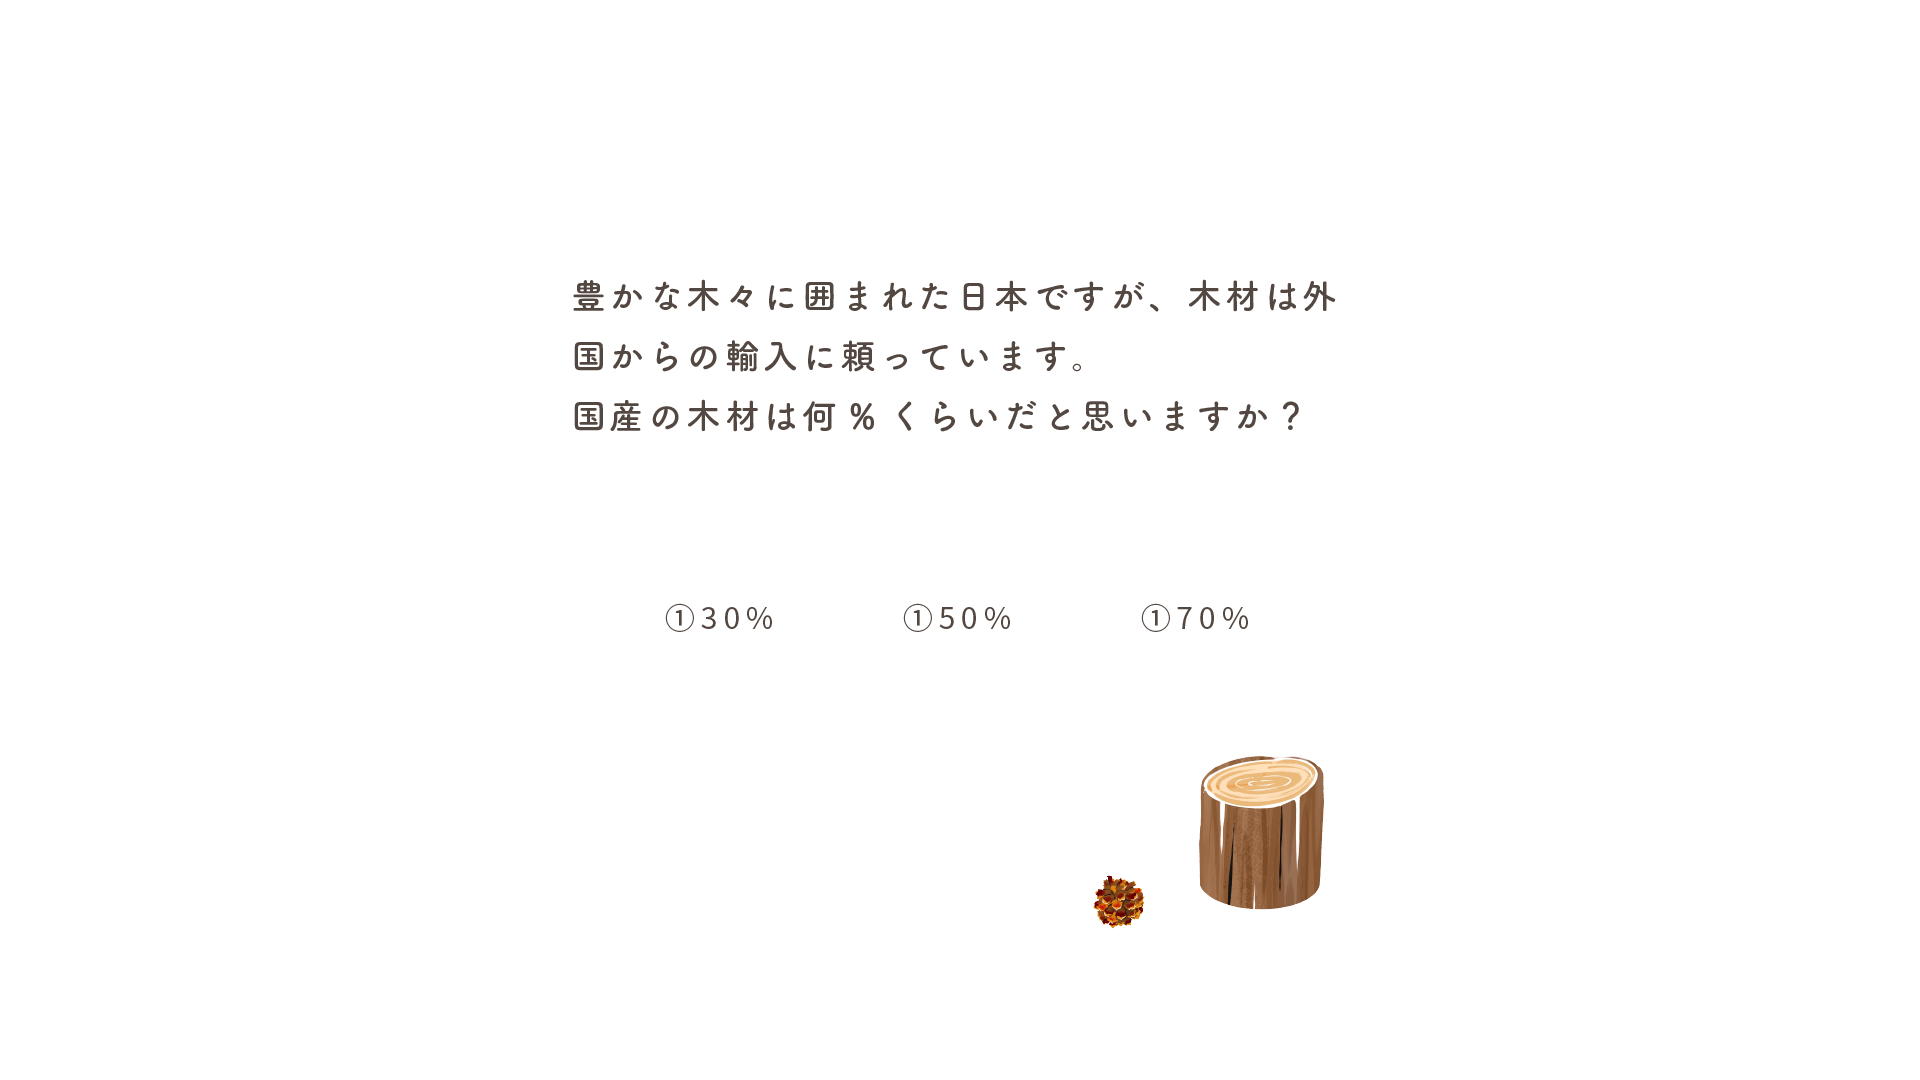 日本で使用されている木材のうち、国産木は何%だと思いますか？